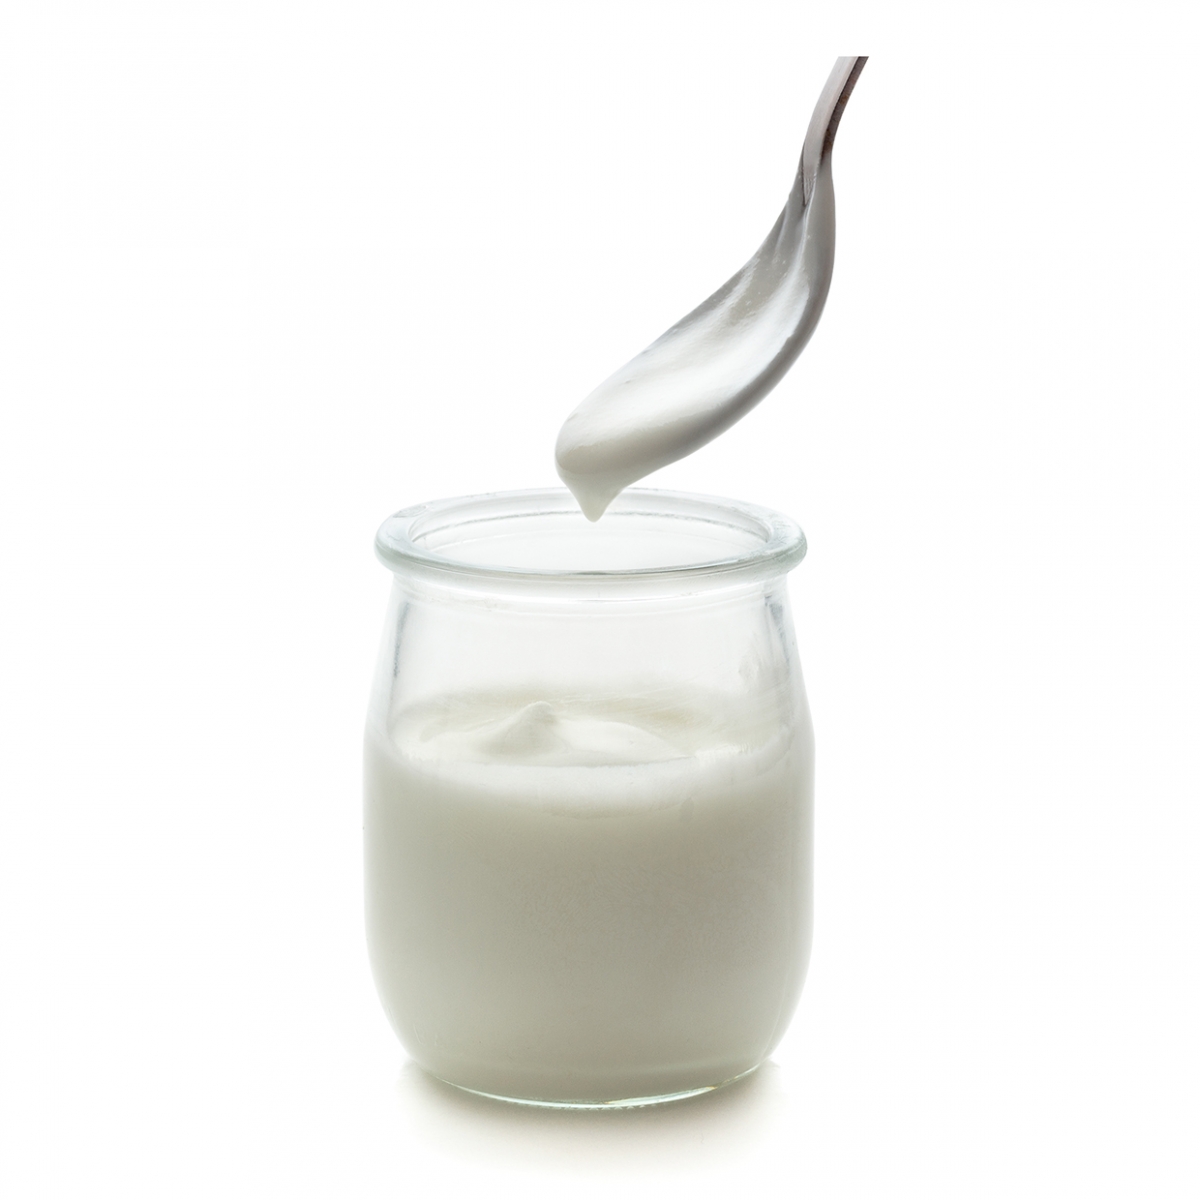 Imagen en la que se ve un recipiente de cristal con yogur en su interior y una cucharilla saliendo del mismo